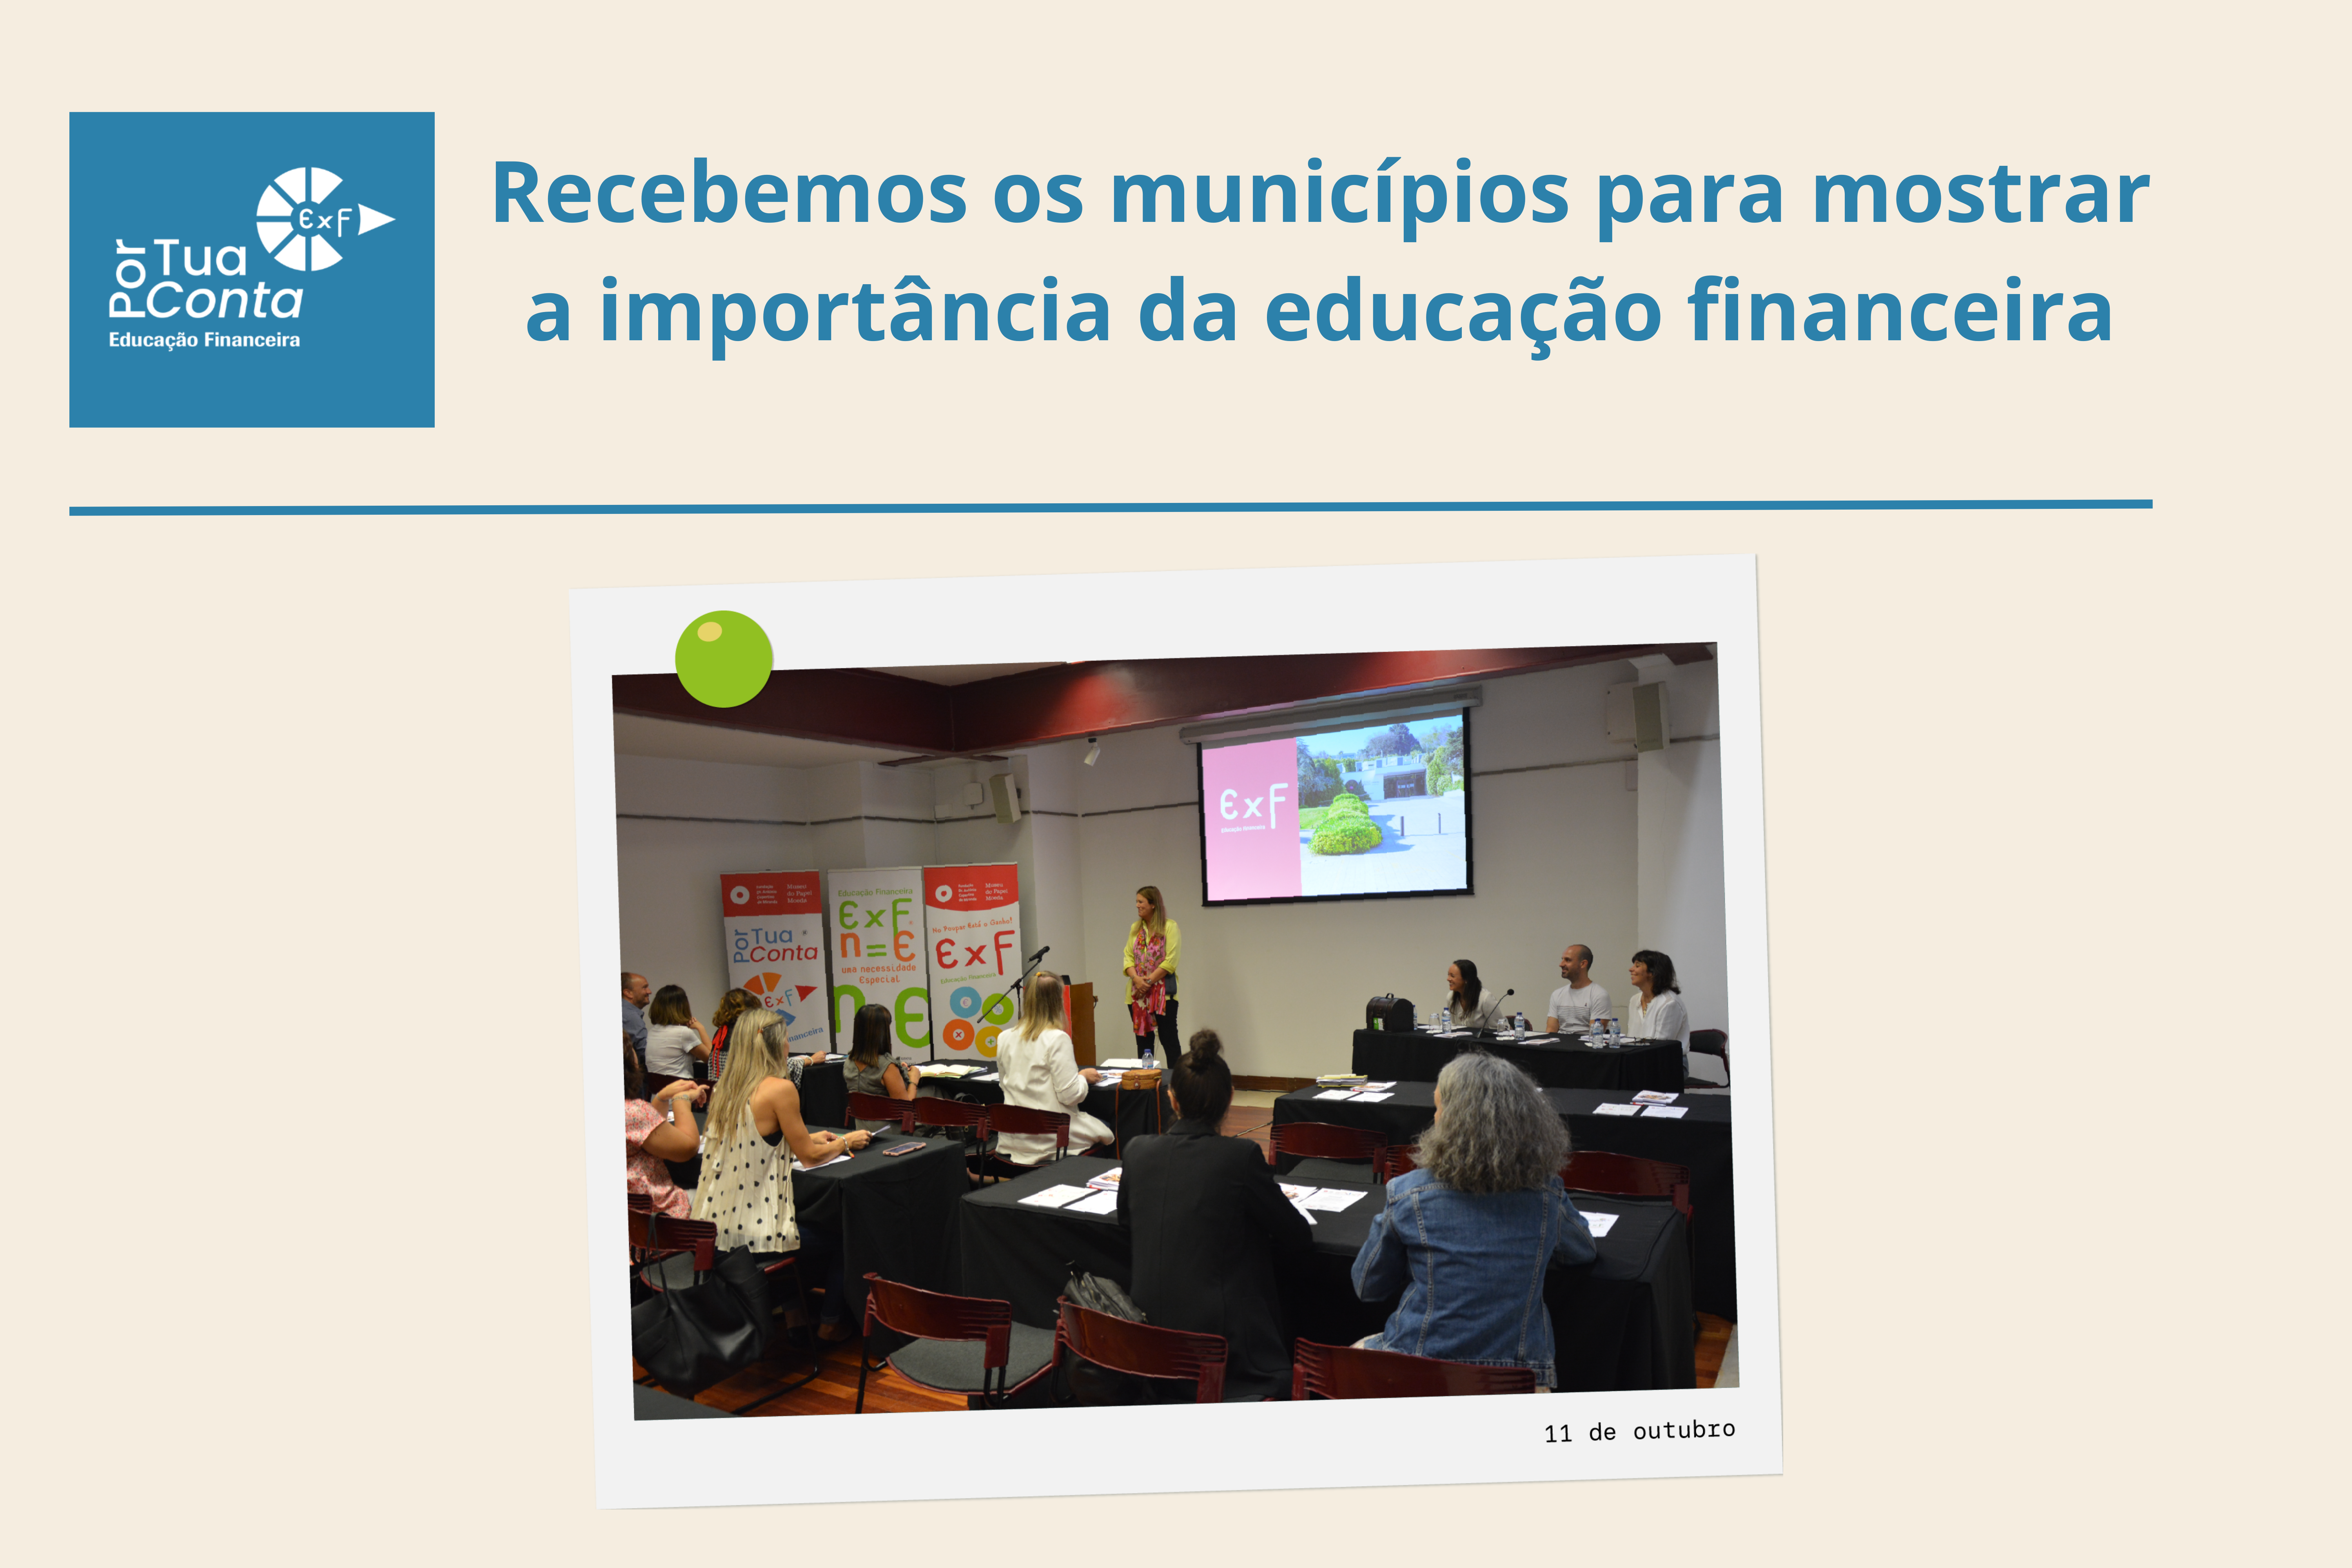 Recebemos os municípios para mostrar a importância da educação financeira